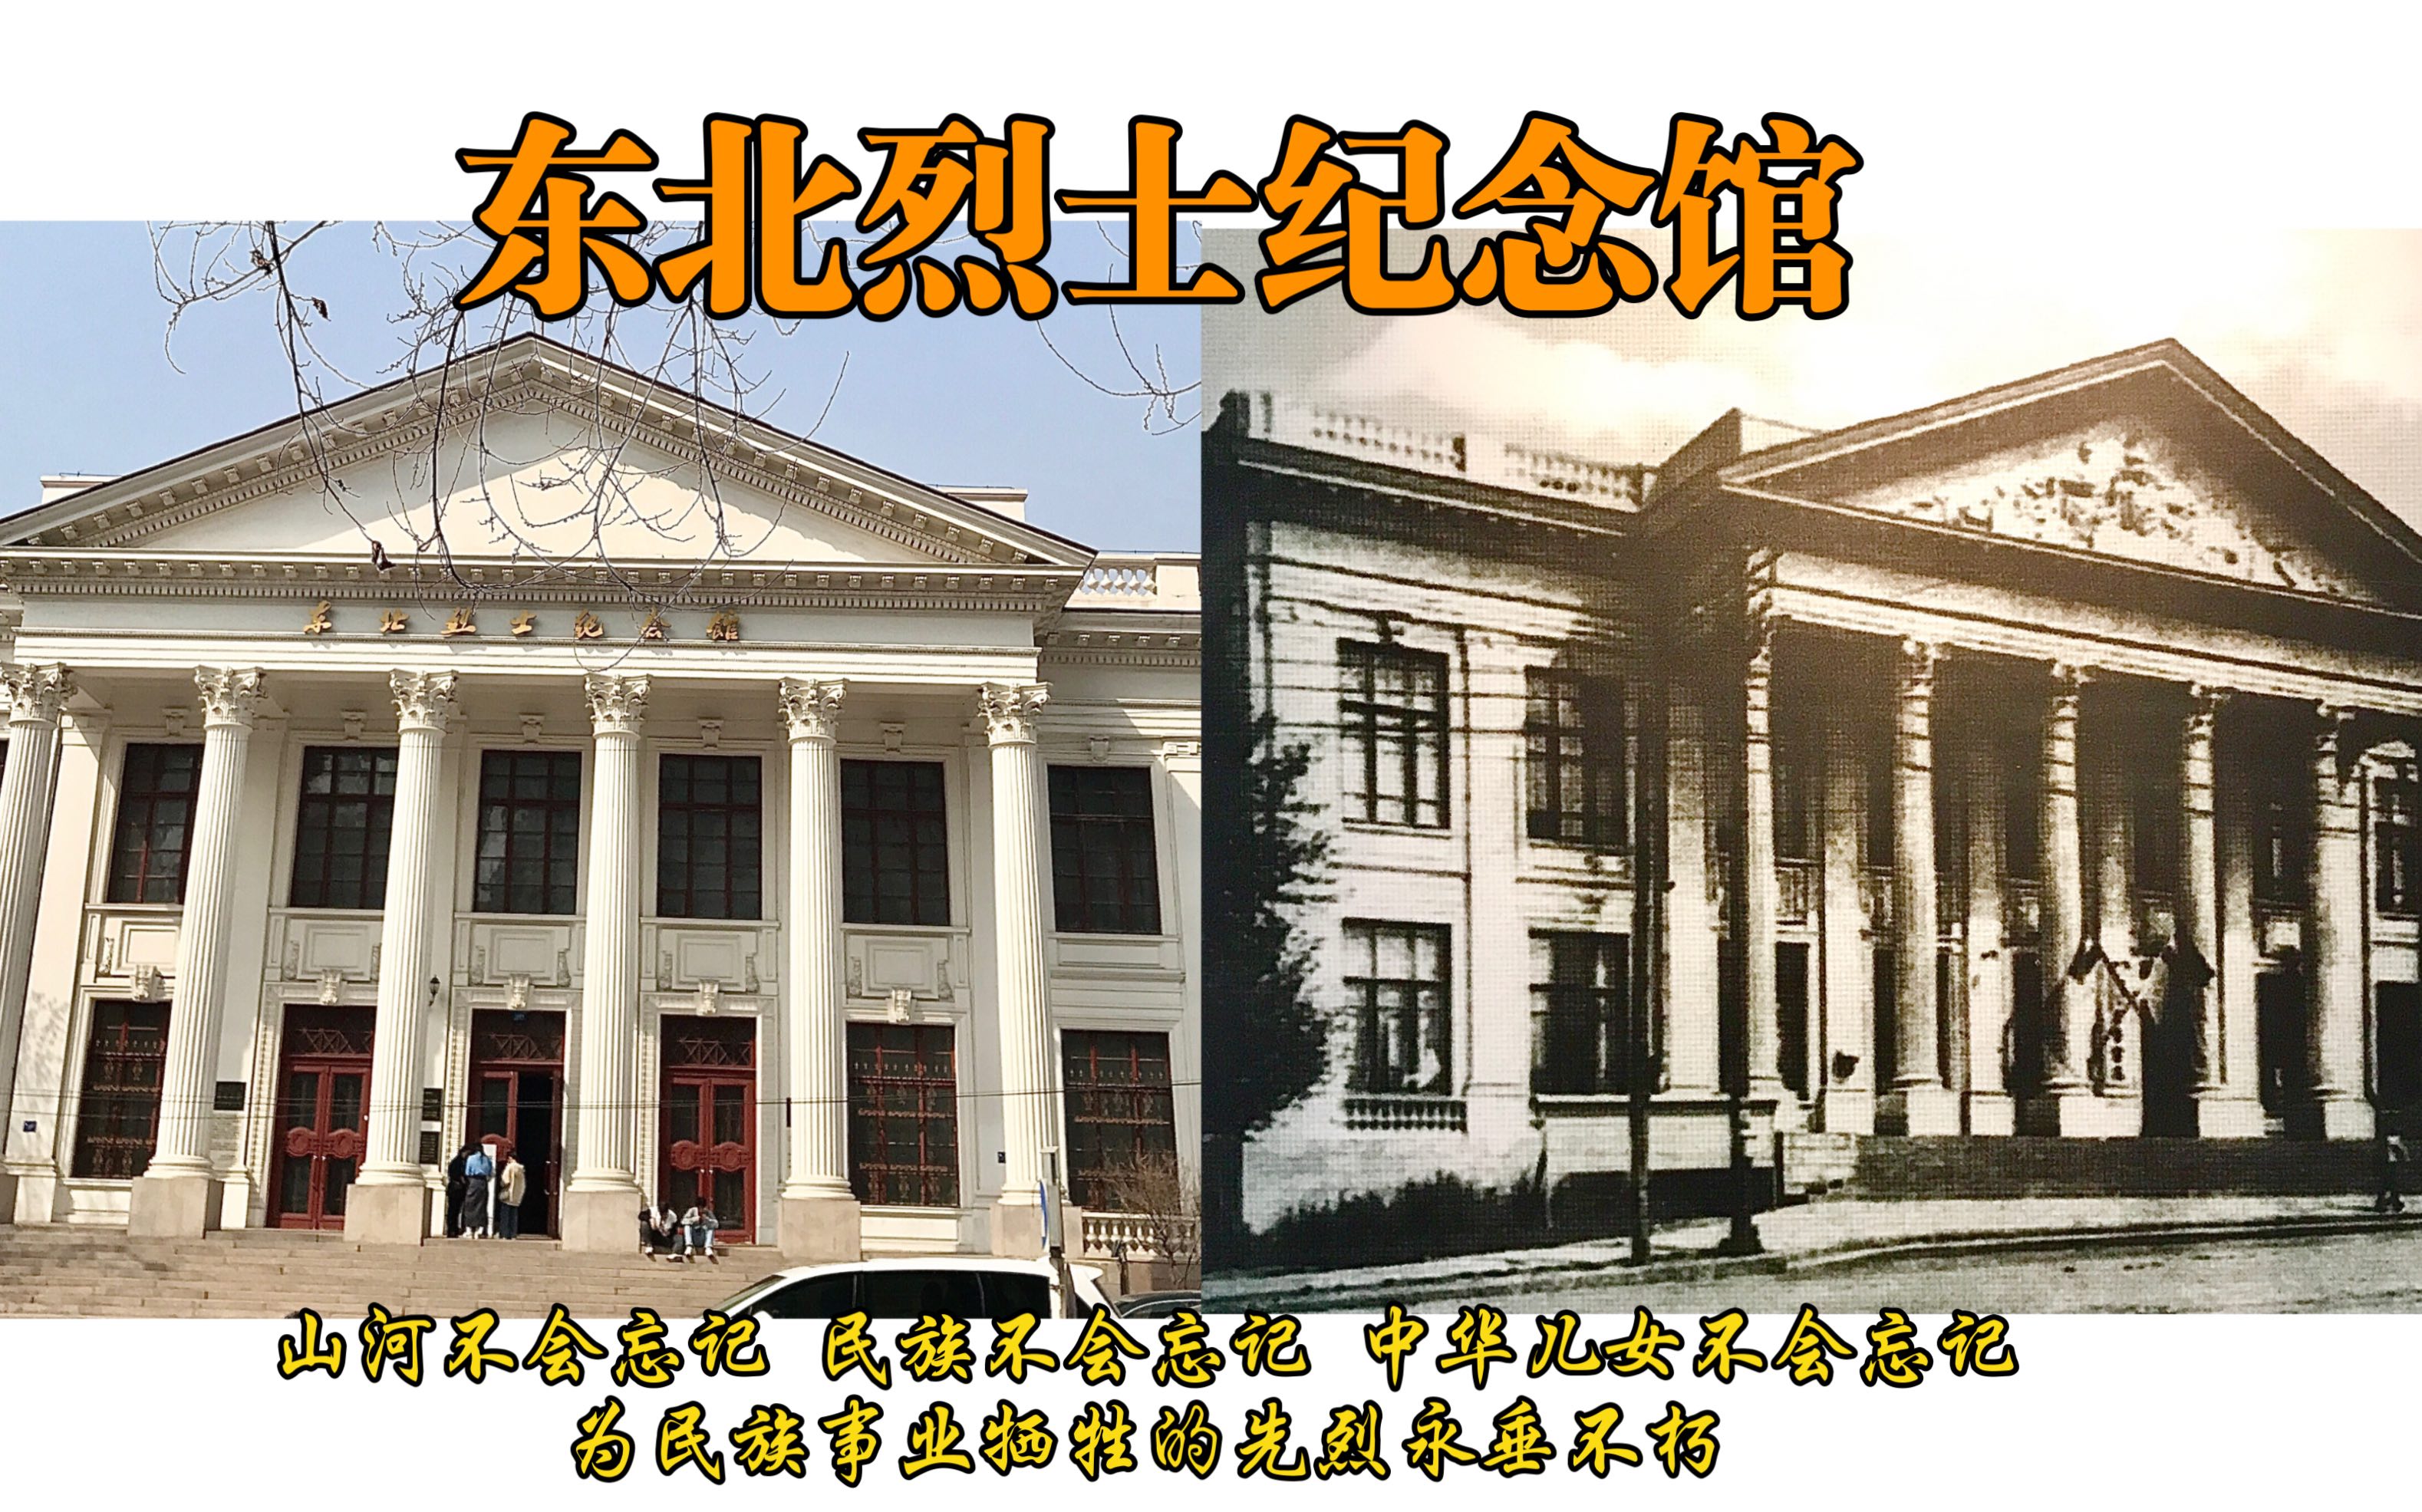 国家一级博物馆—东北烈士纪念馆(伪满洲国哈尔滨警察厅旧址)